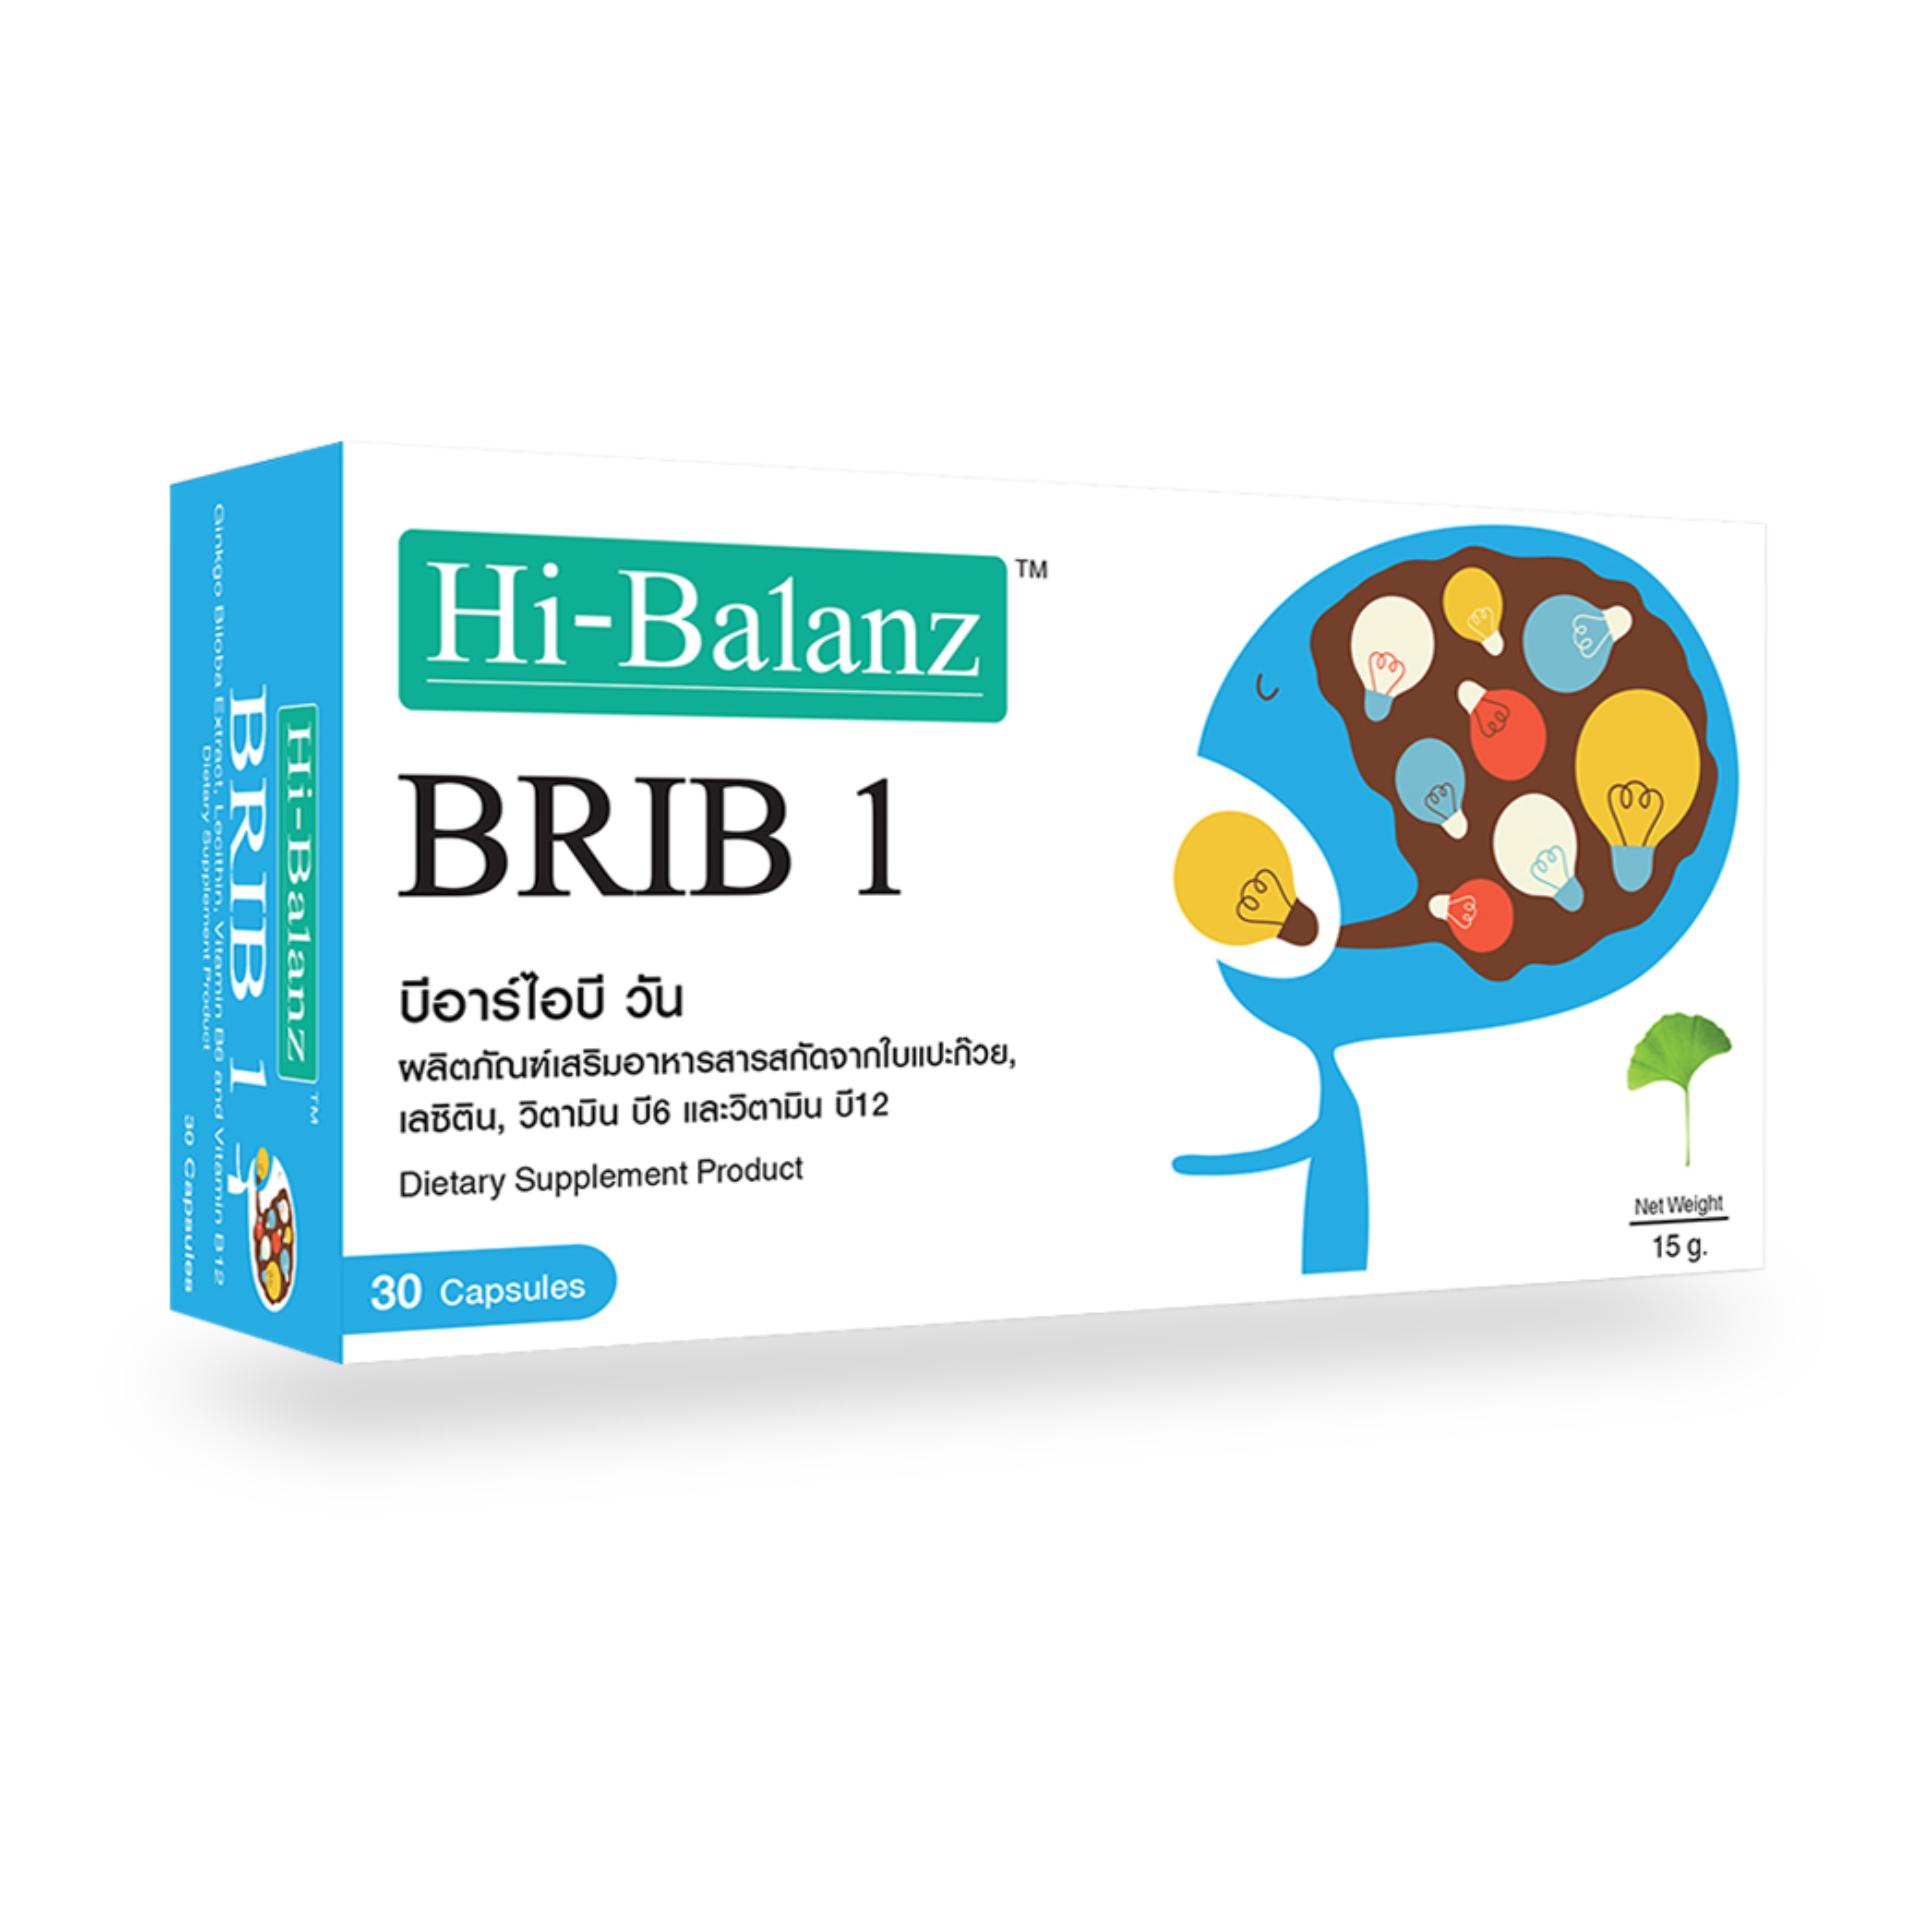 ผลิตภัณฑ์เสริมอาหารไฮบาลานซ์ สารสกัดจากใบแปะก๊วย 119 มก. / Hi-Balanz BRIB 1 (30 Capsules) / (บำรุงสมอง, เสริมความจำ, เสริมการทำงานของระบบประสาท, มีส่วนช่วยเพิ่มเลือดไปเลี้ยงสมอง)